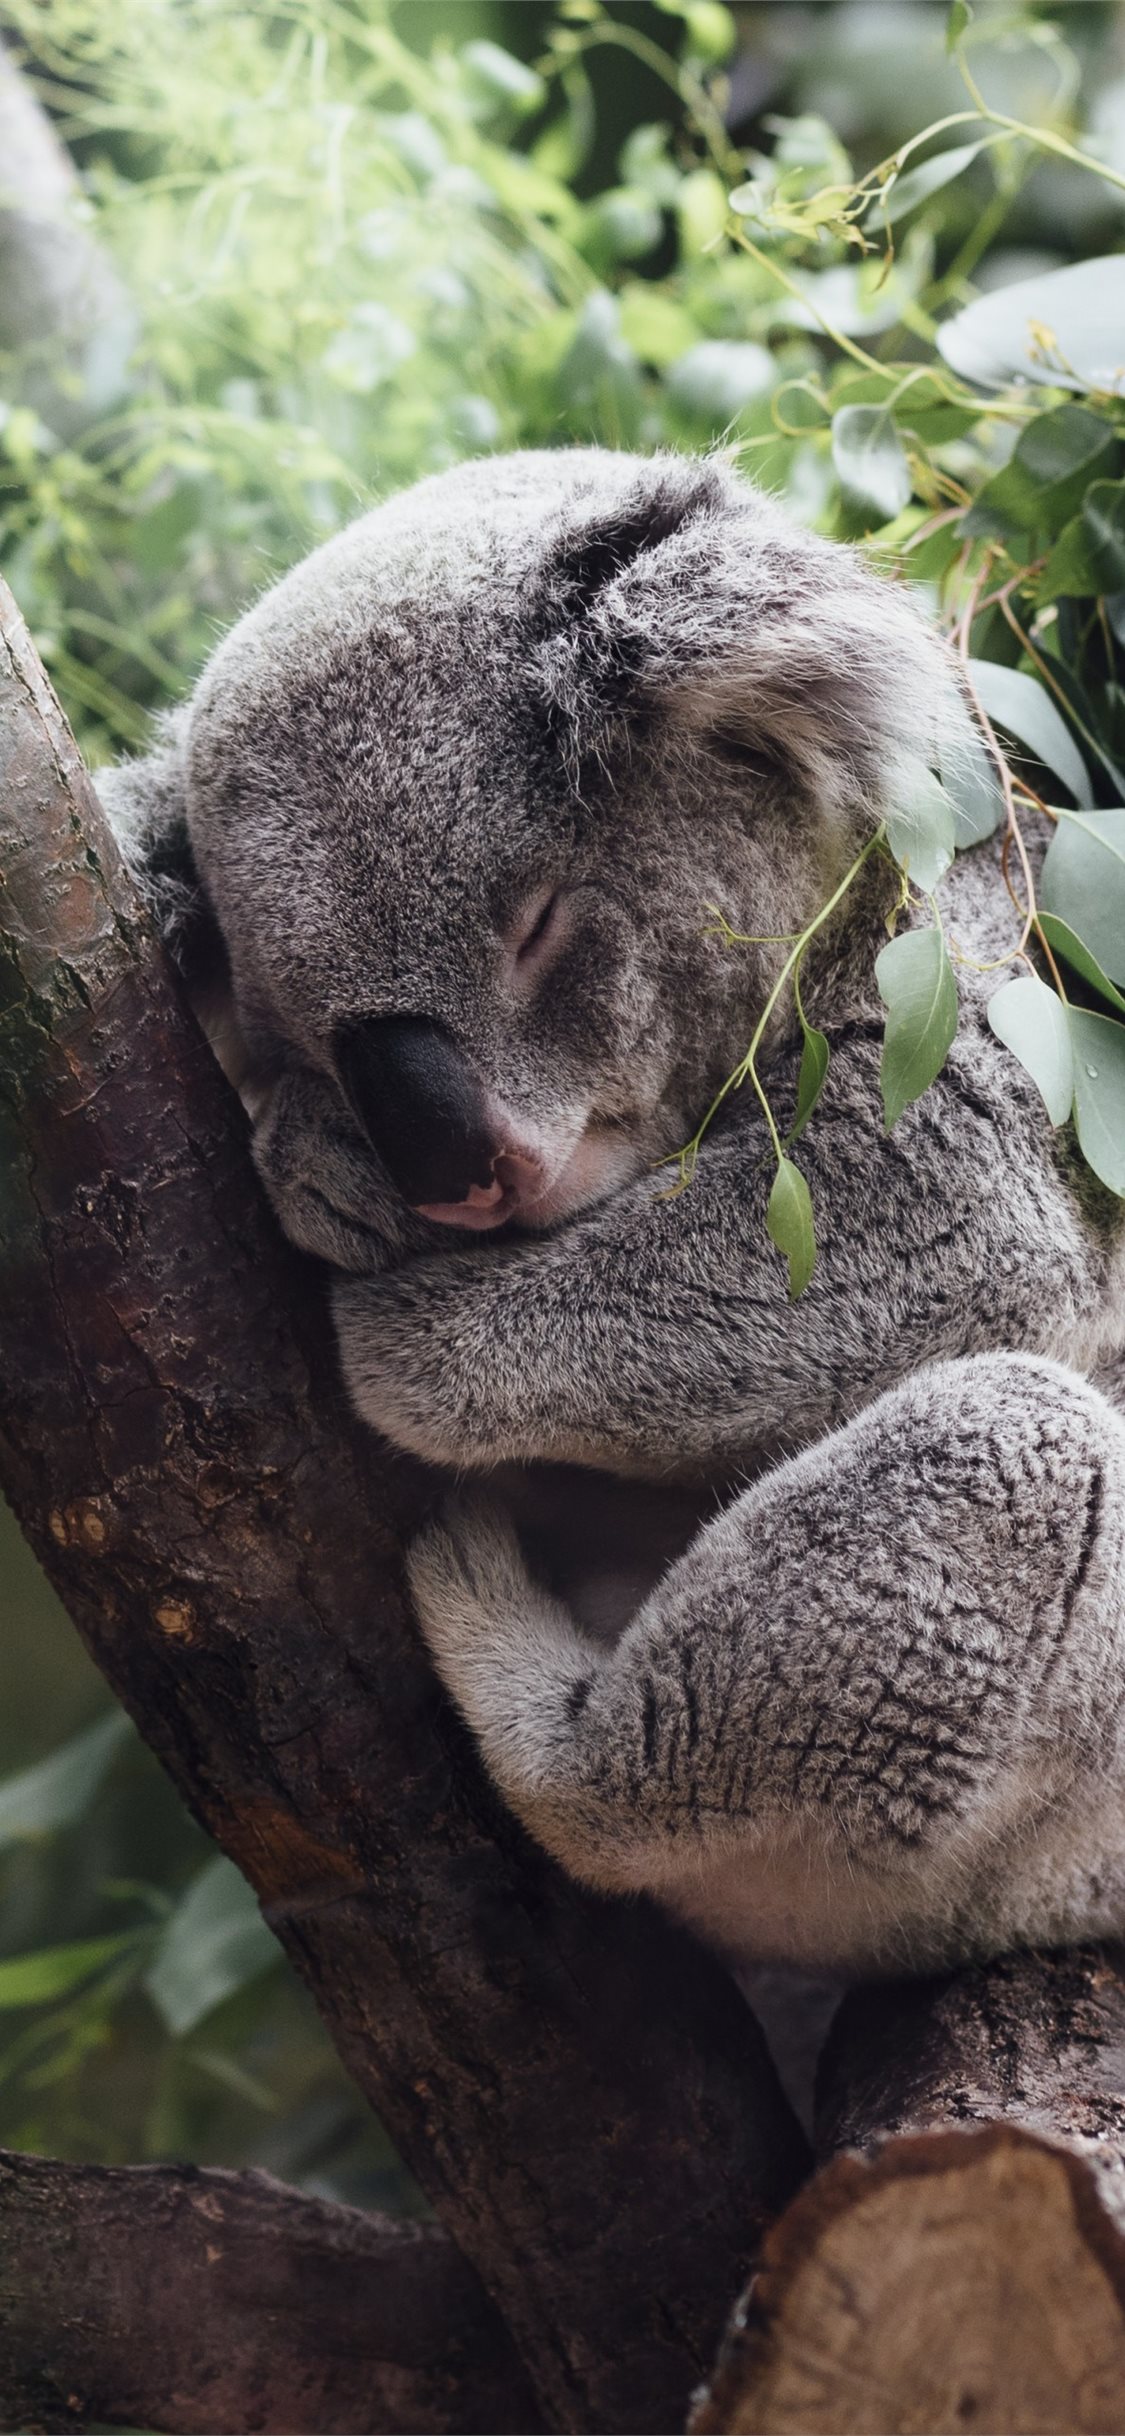 200 Free Cute Koala  Koala Images  Pixabay